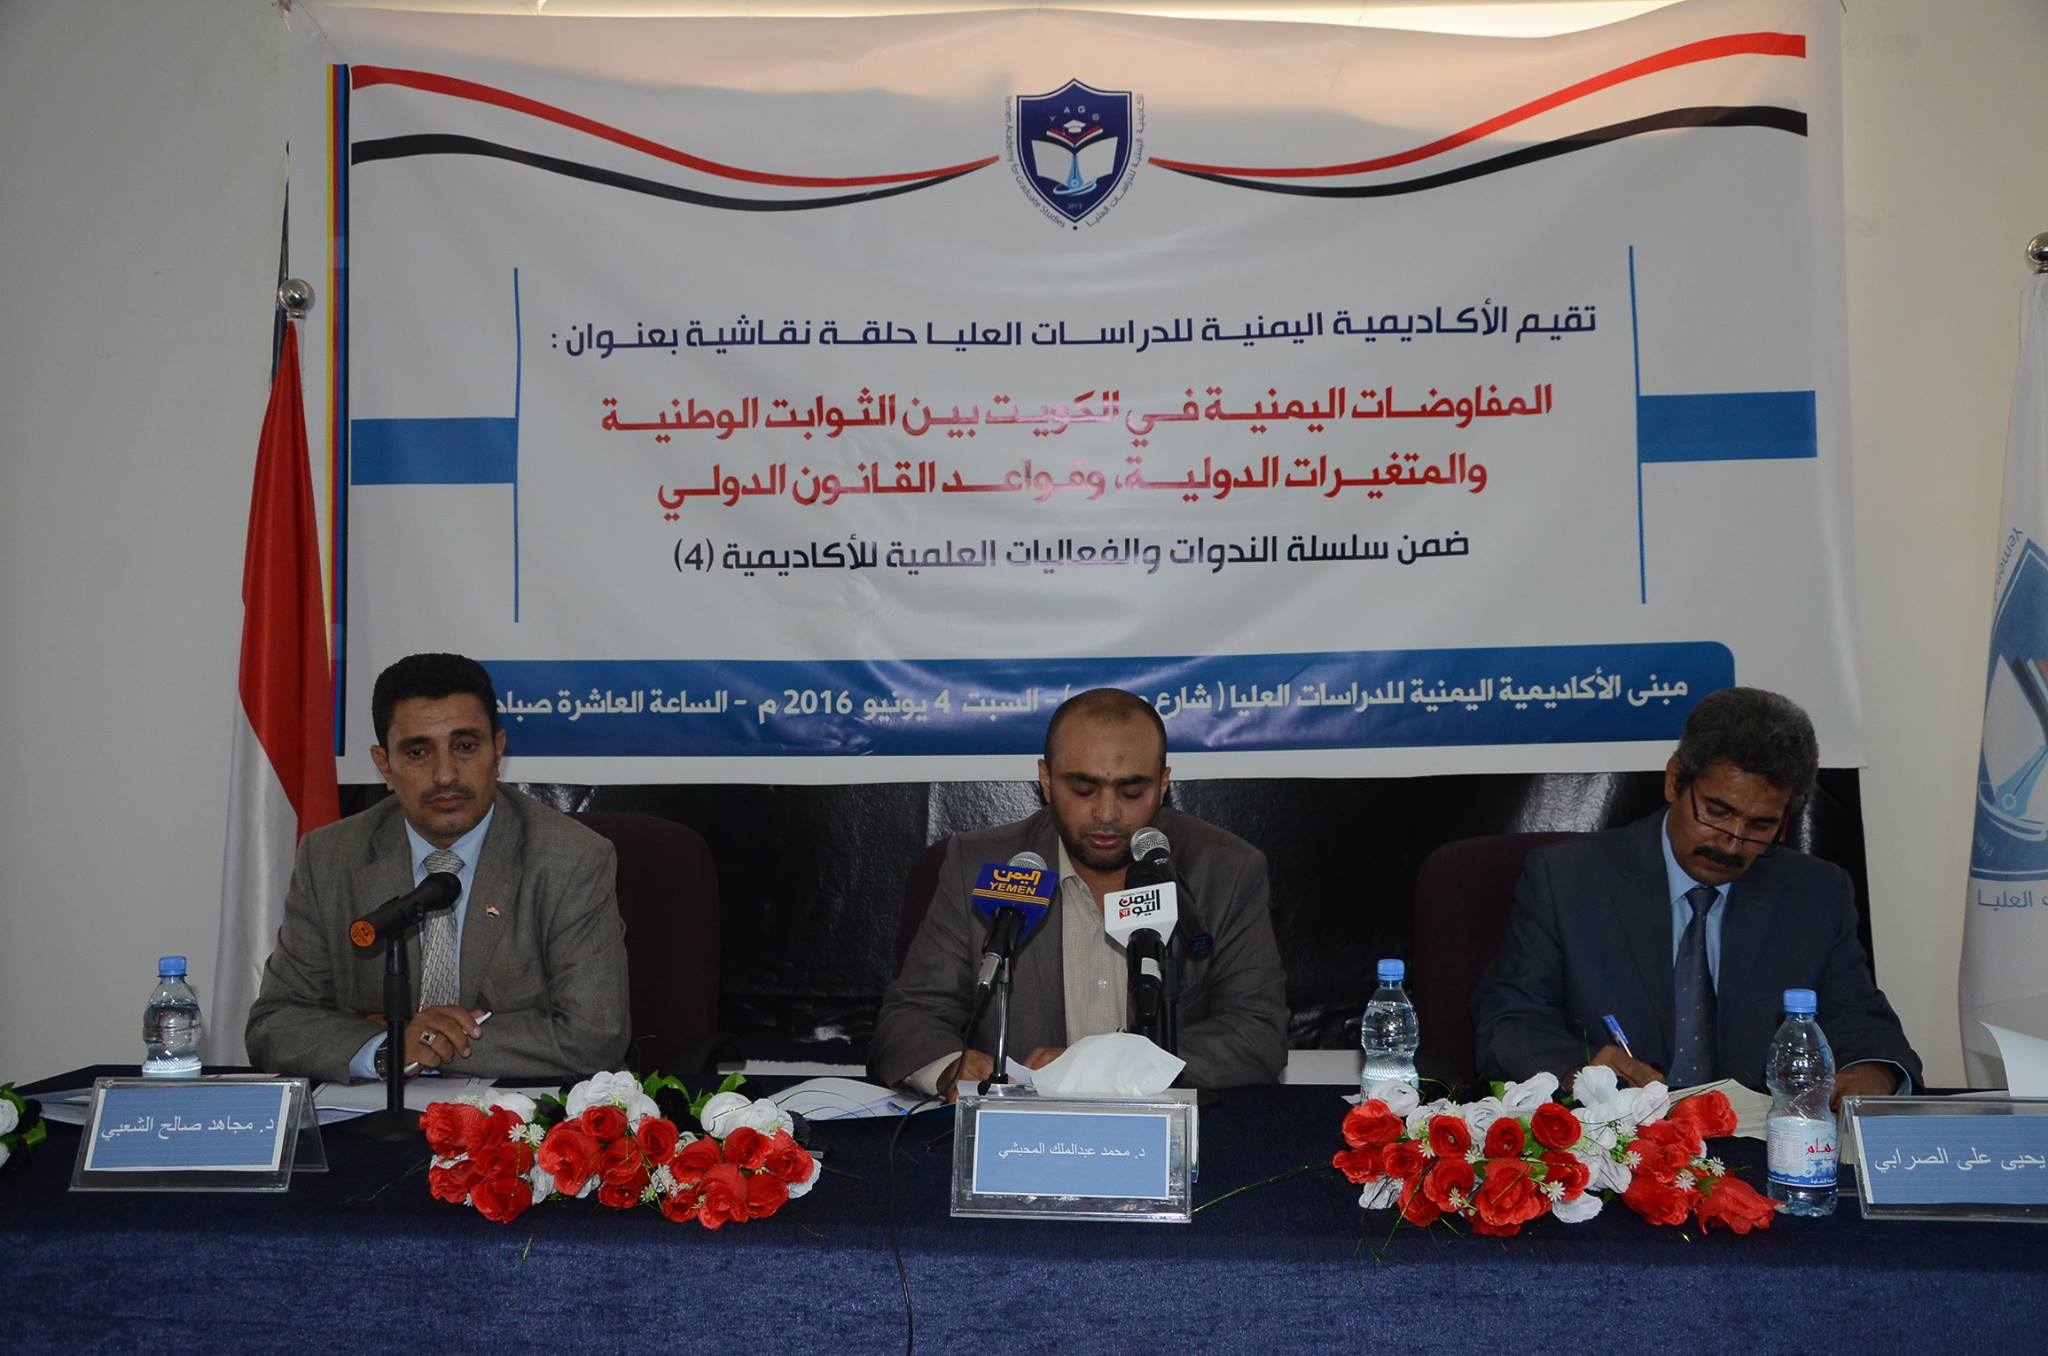 حلقة نقاشية بعنوان: المفاوضات اليمنية في الكويت بين الثوابت الوطنية والمتغيرات الدولية